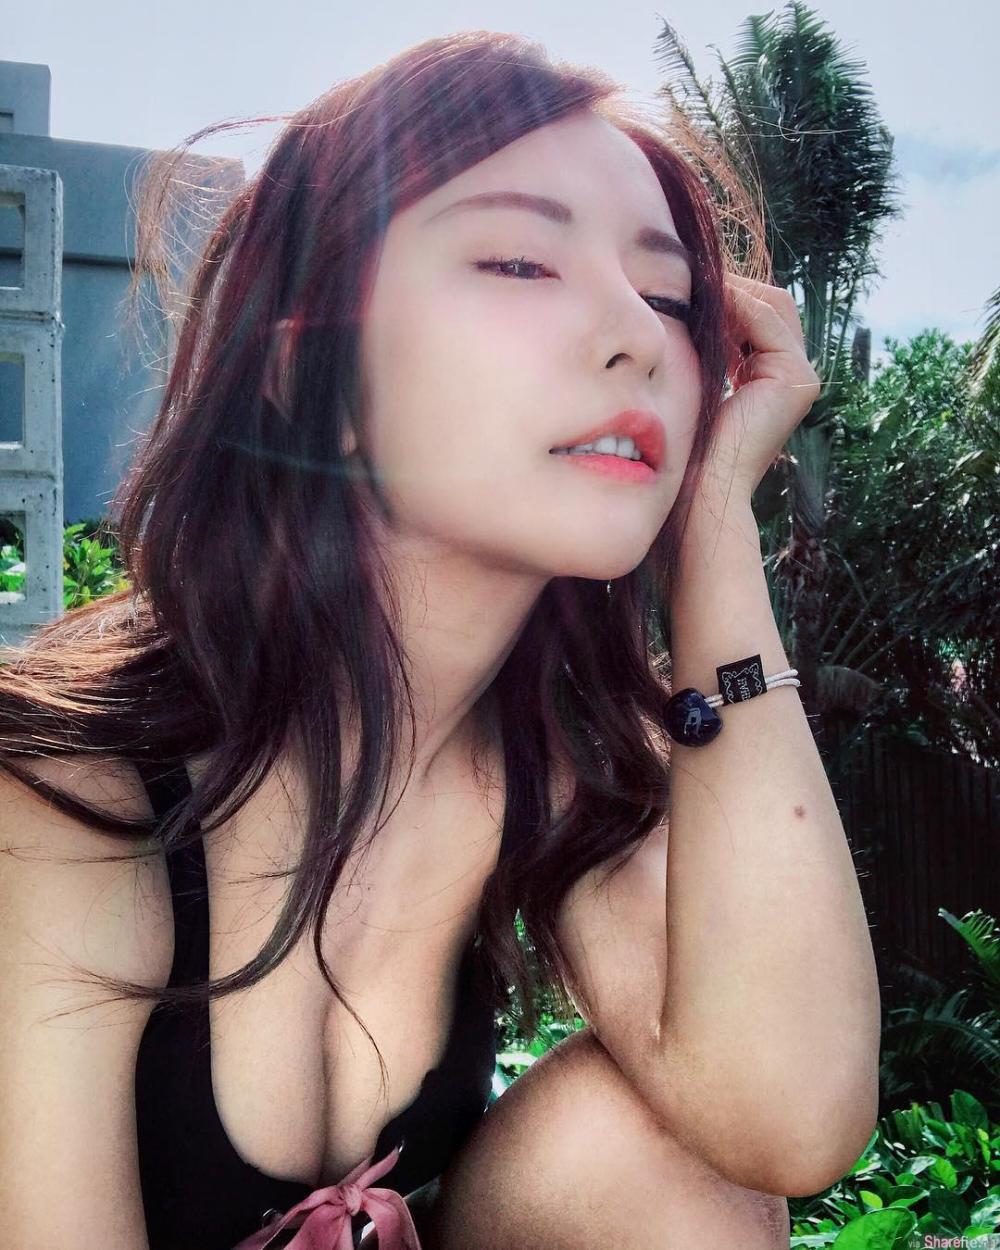 巫苡萱 Sexy and Hottest Photos , Latest Pics